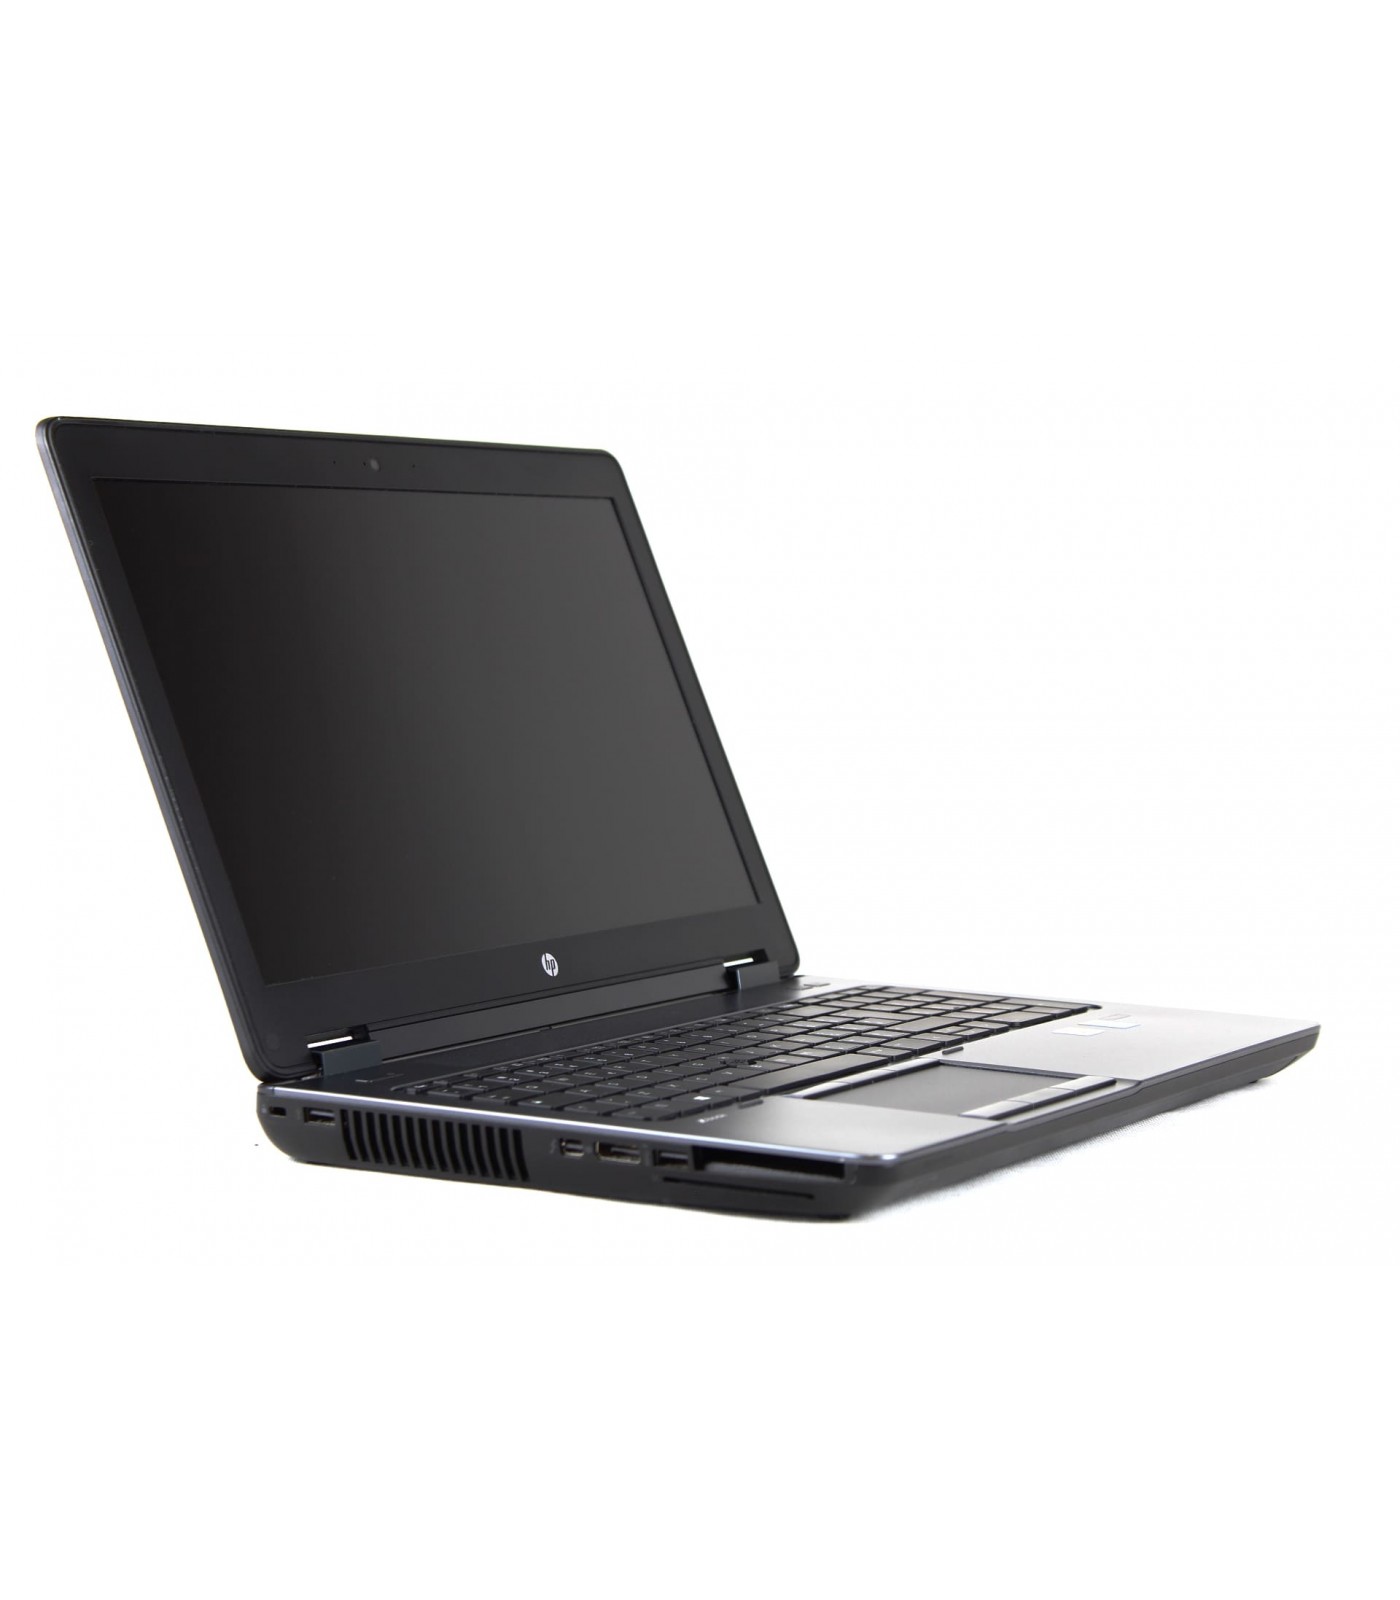 Poleasingowy laptop HP Zbook 15 G2 z procesorem i7